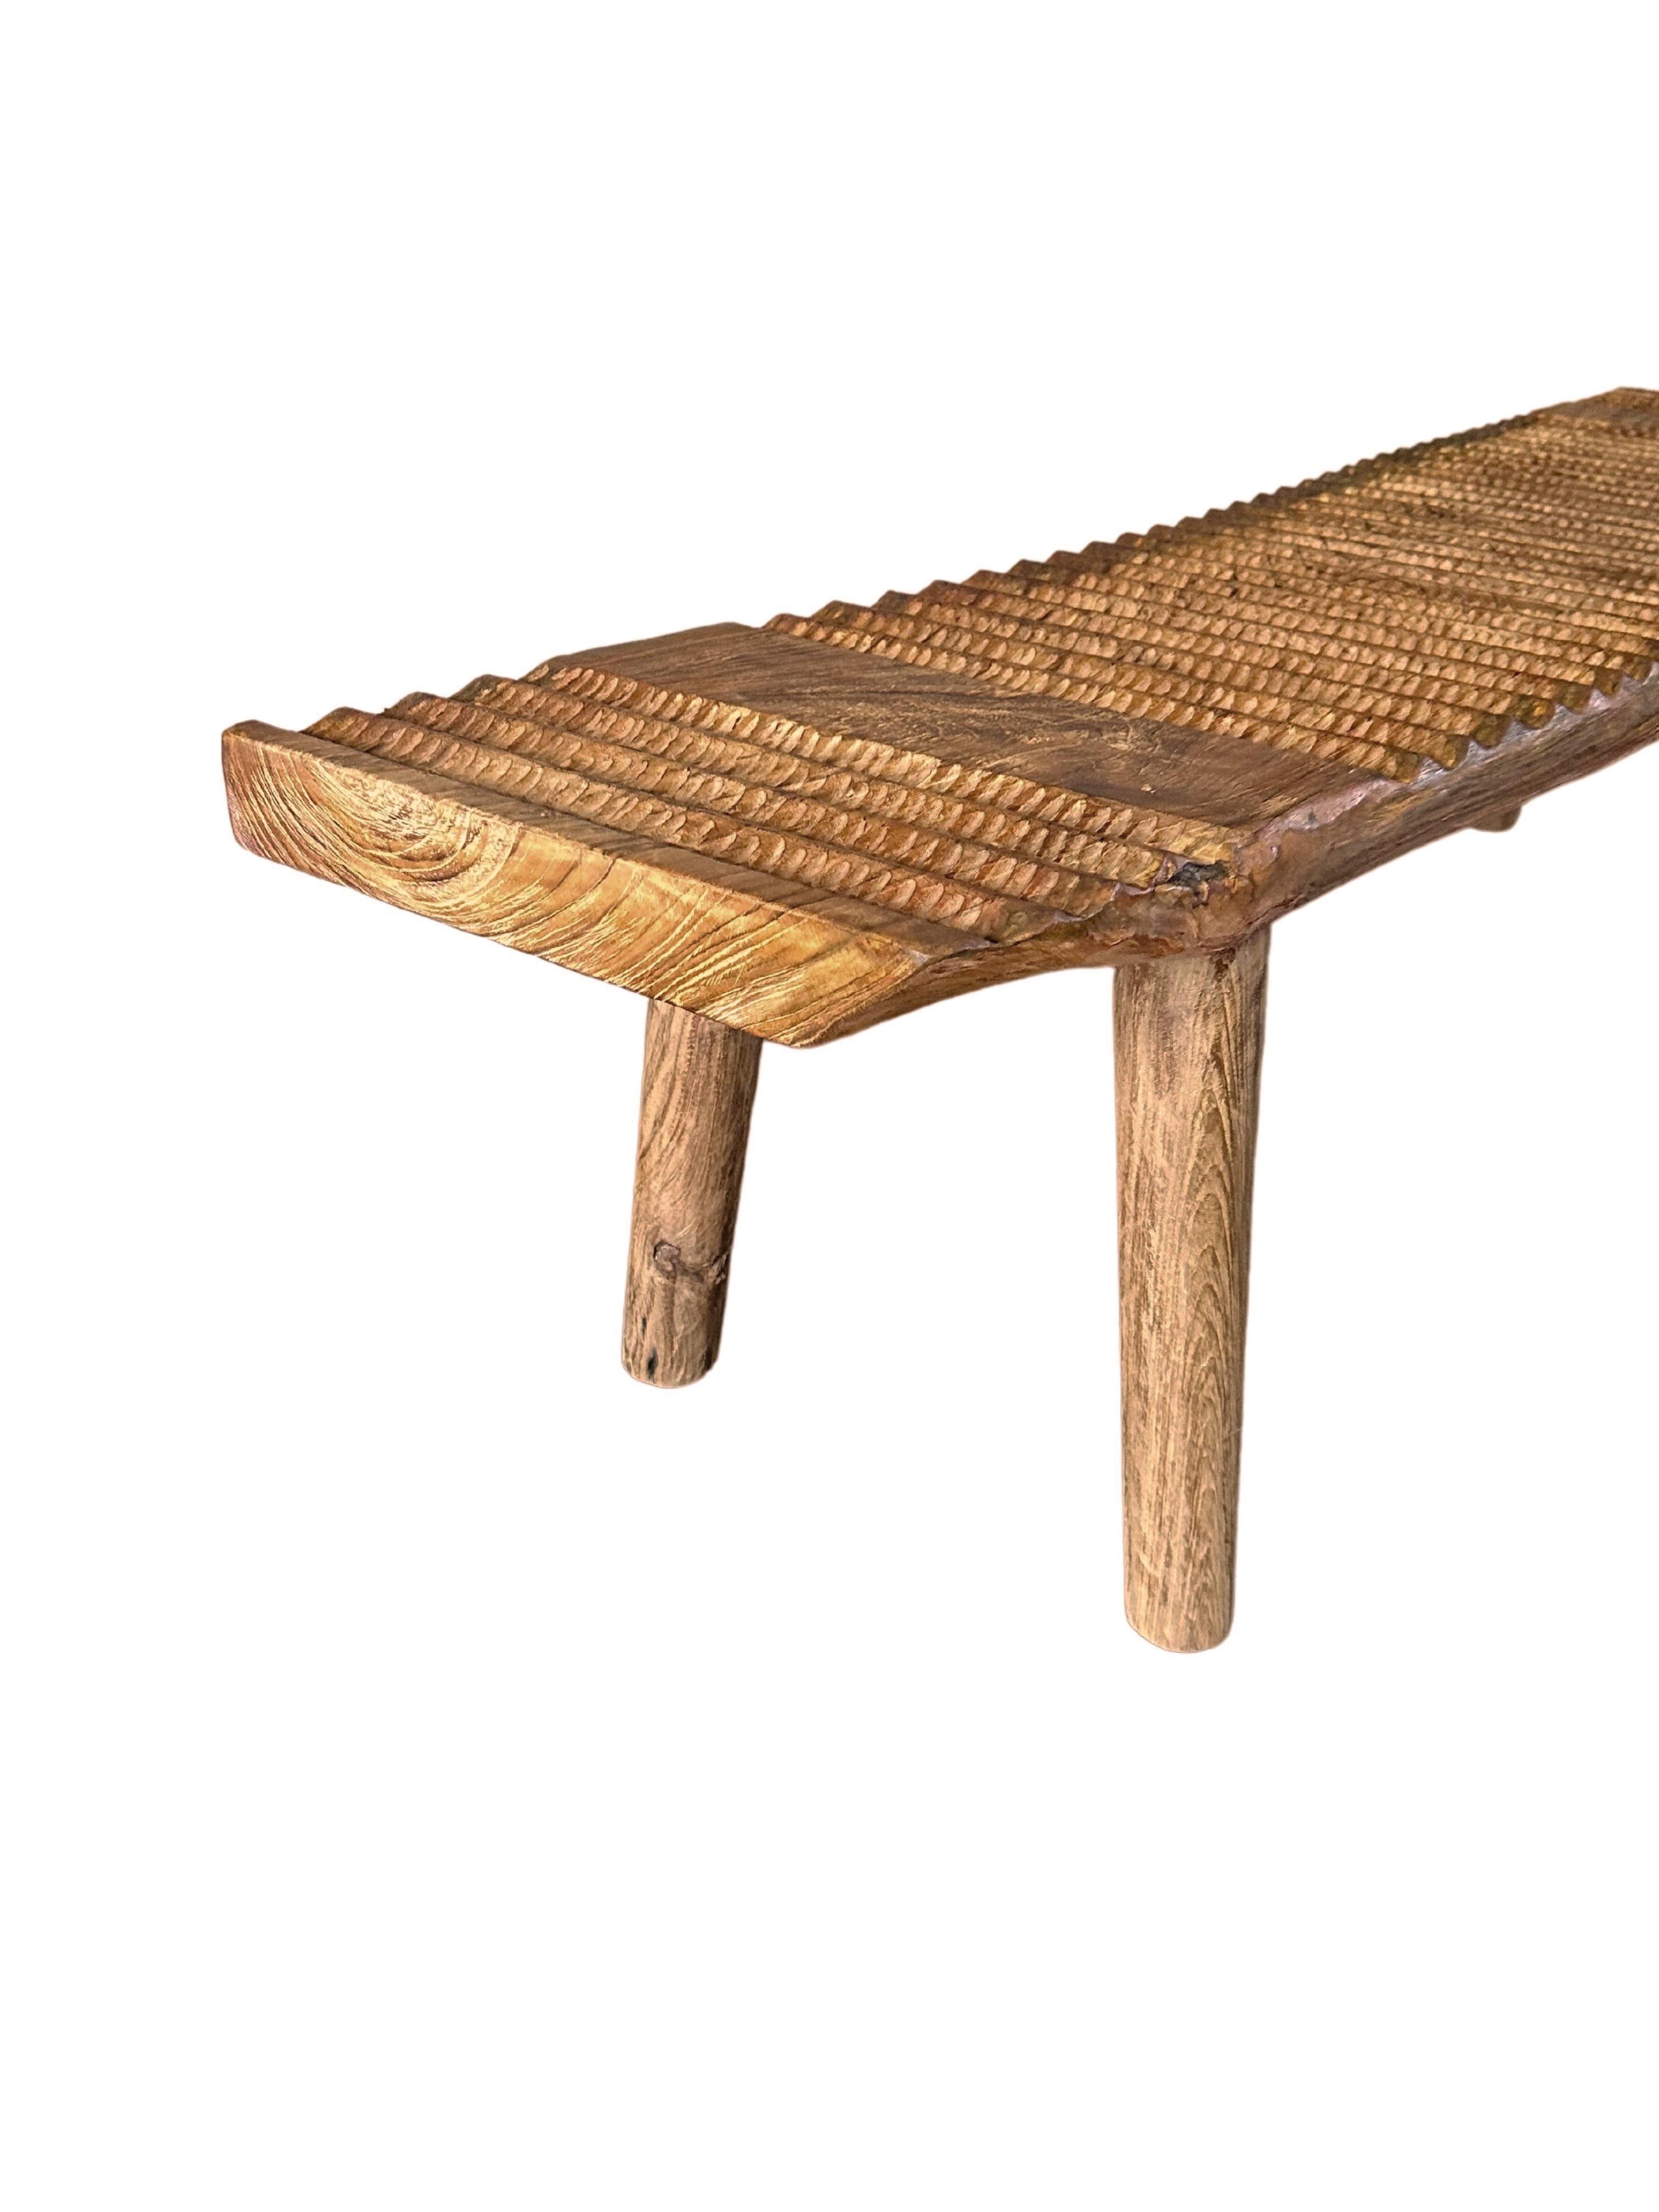 Teak Wood Sculptural Bench, Carved Detailing, Modern Organic For Sale 1